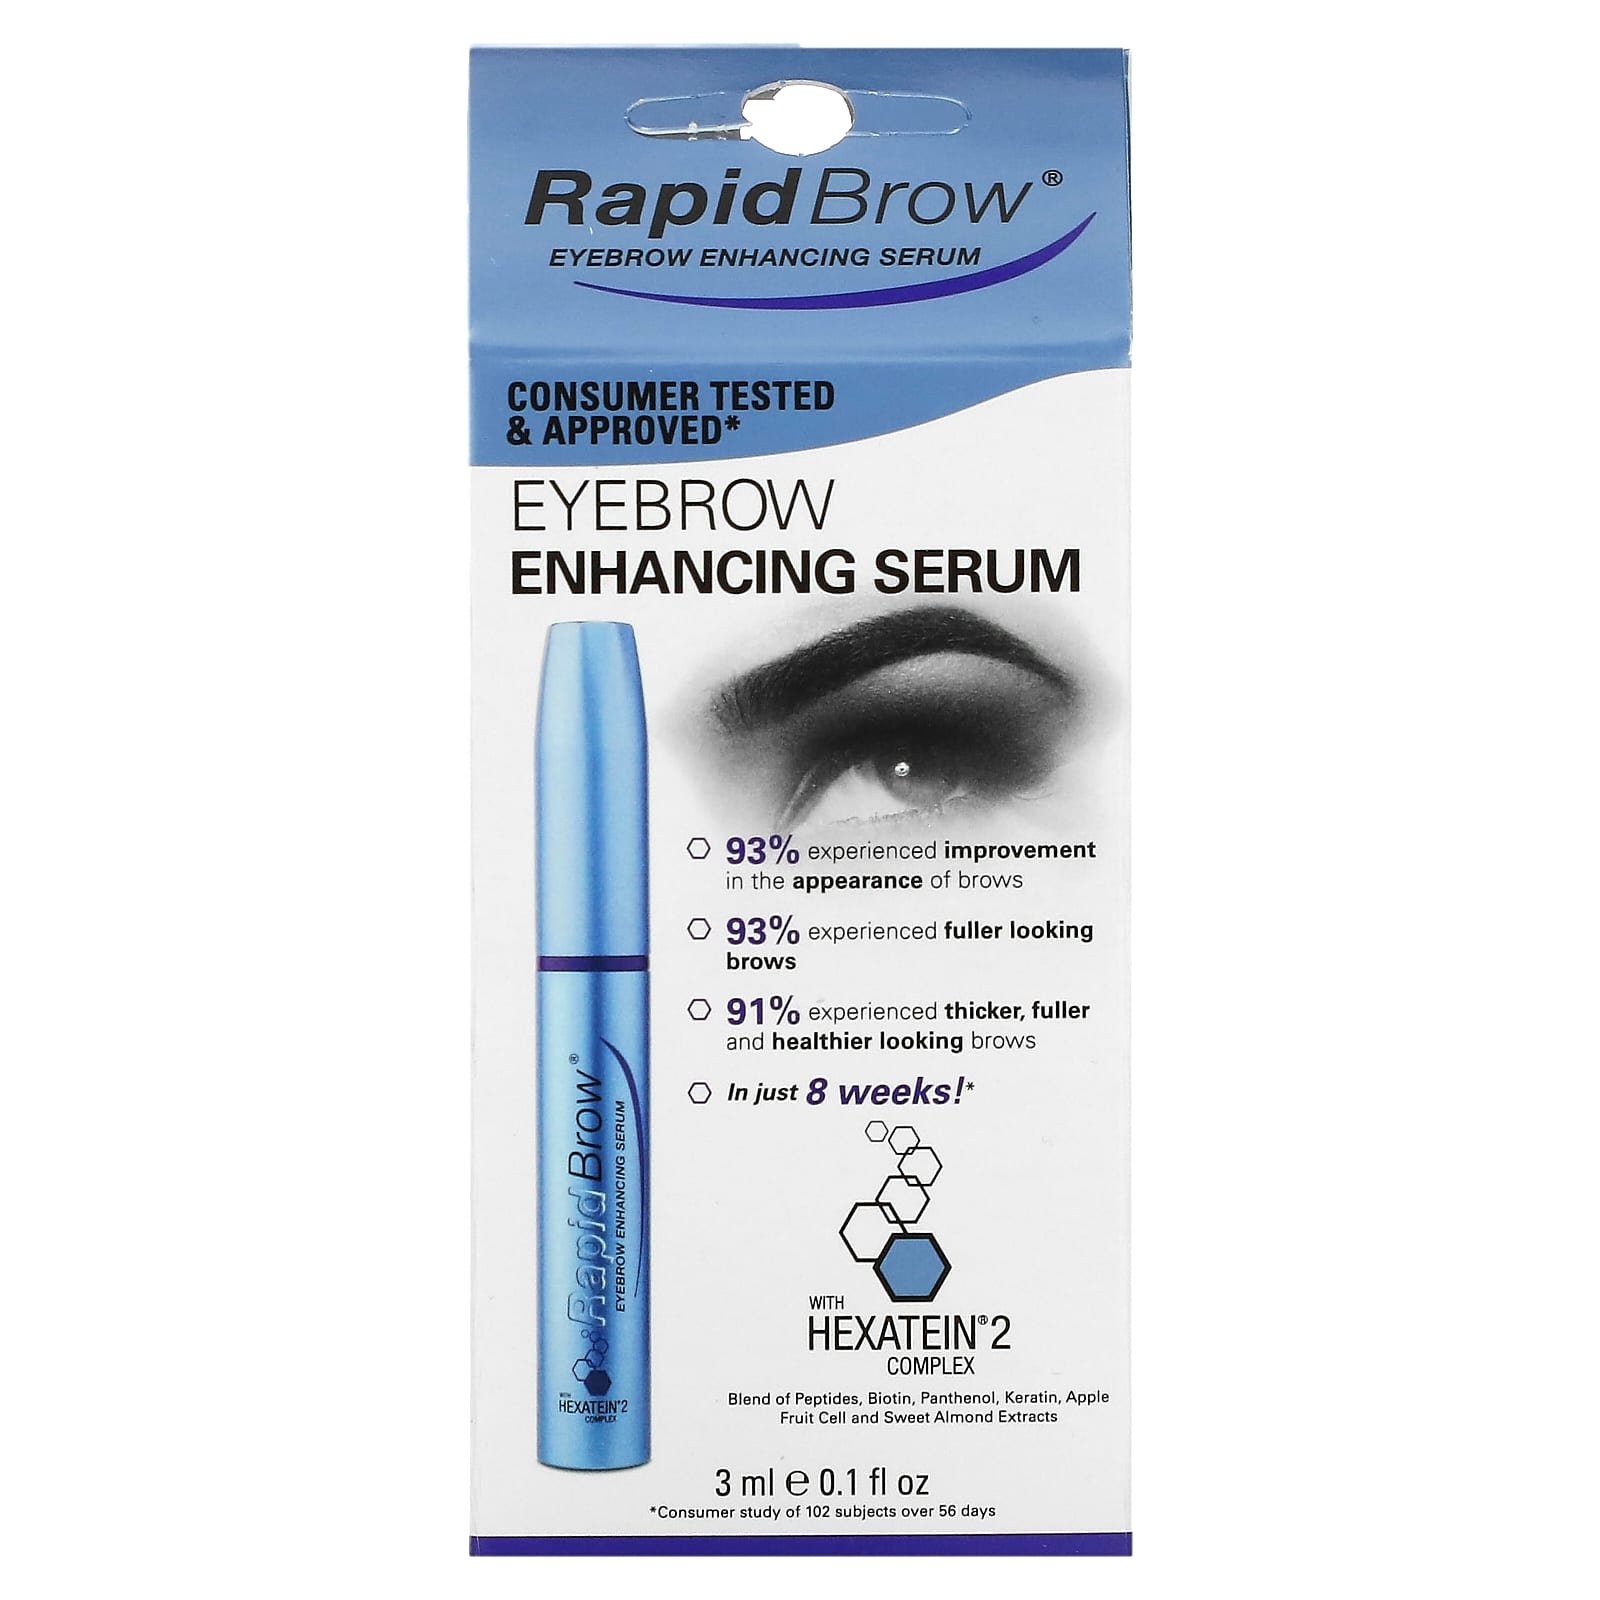 Rapidlash Rapidbrow Eyebrow Enhancing Serum Price